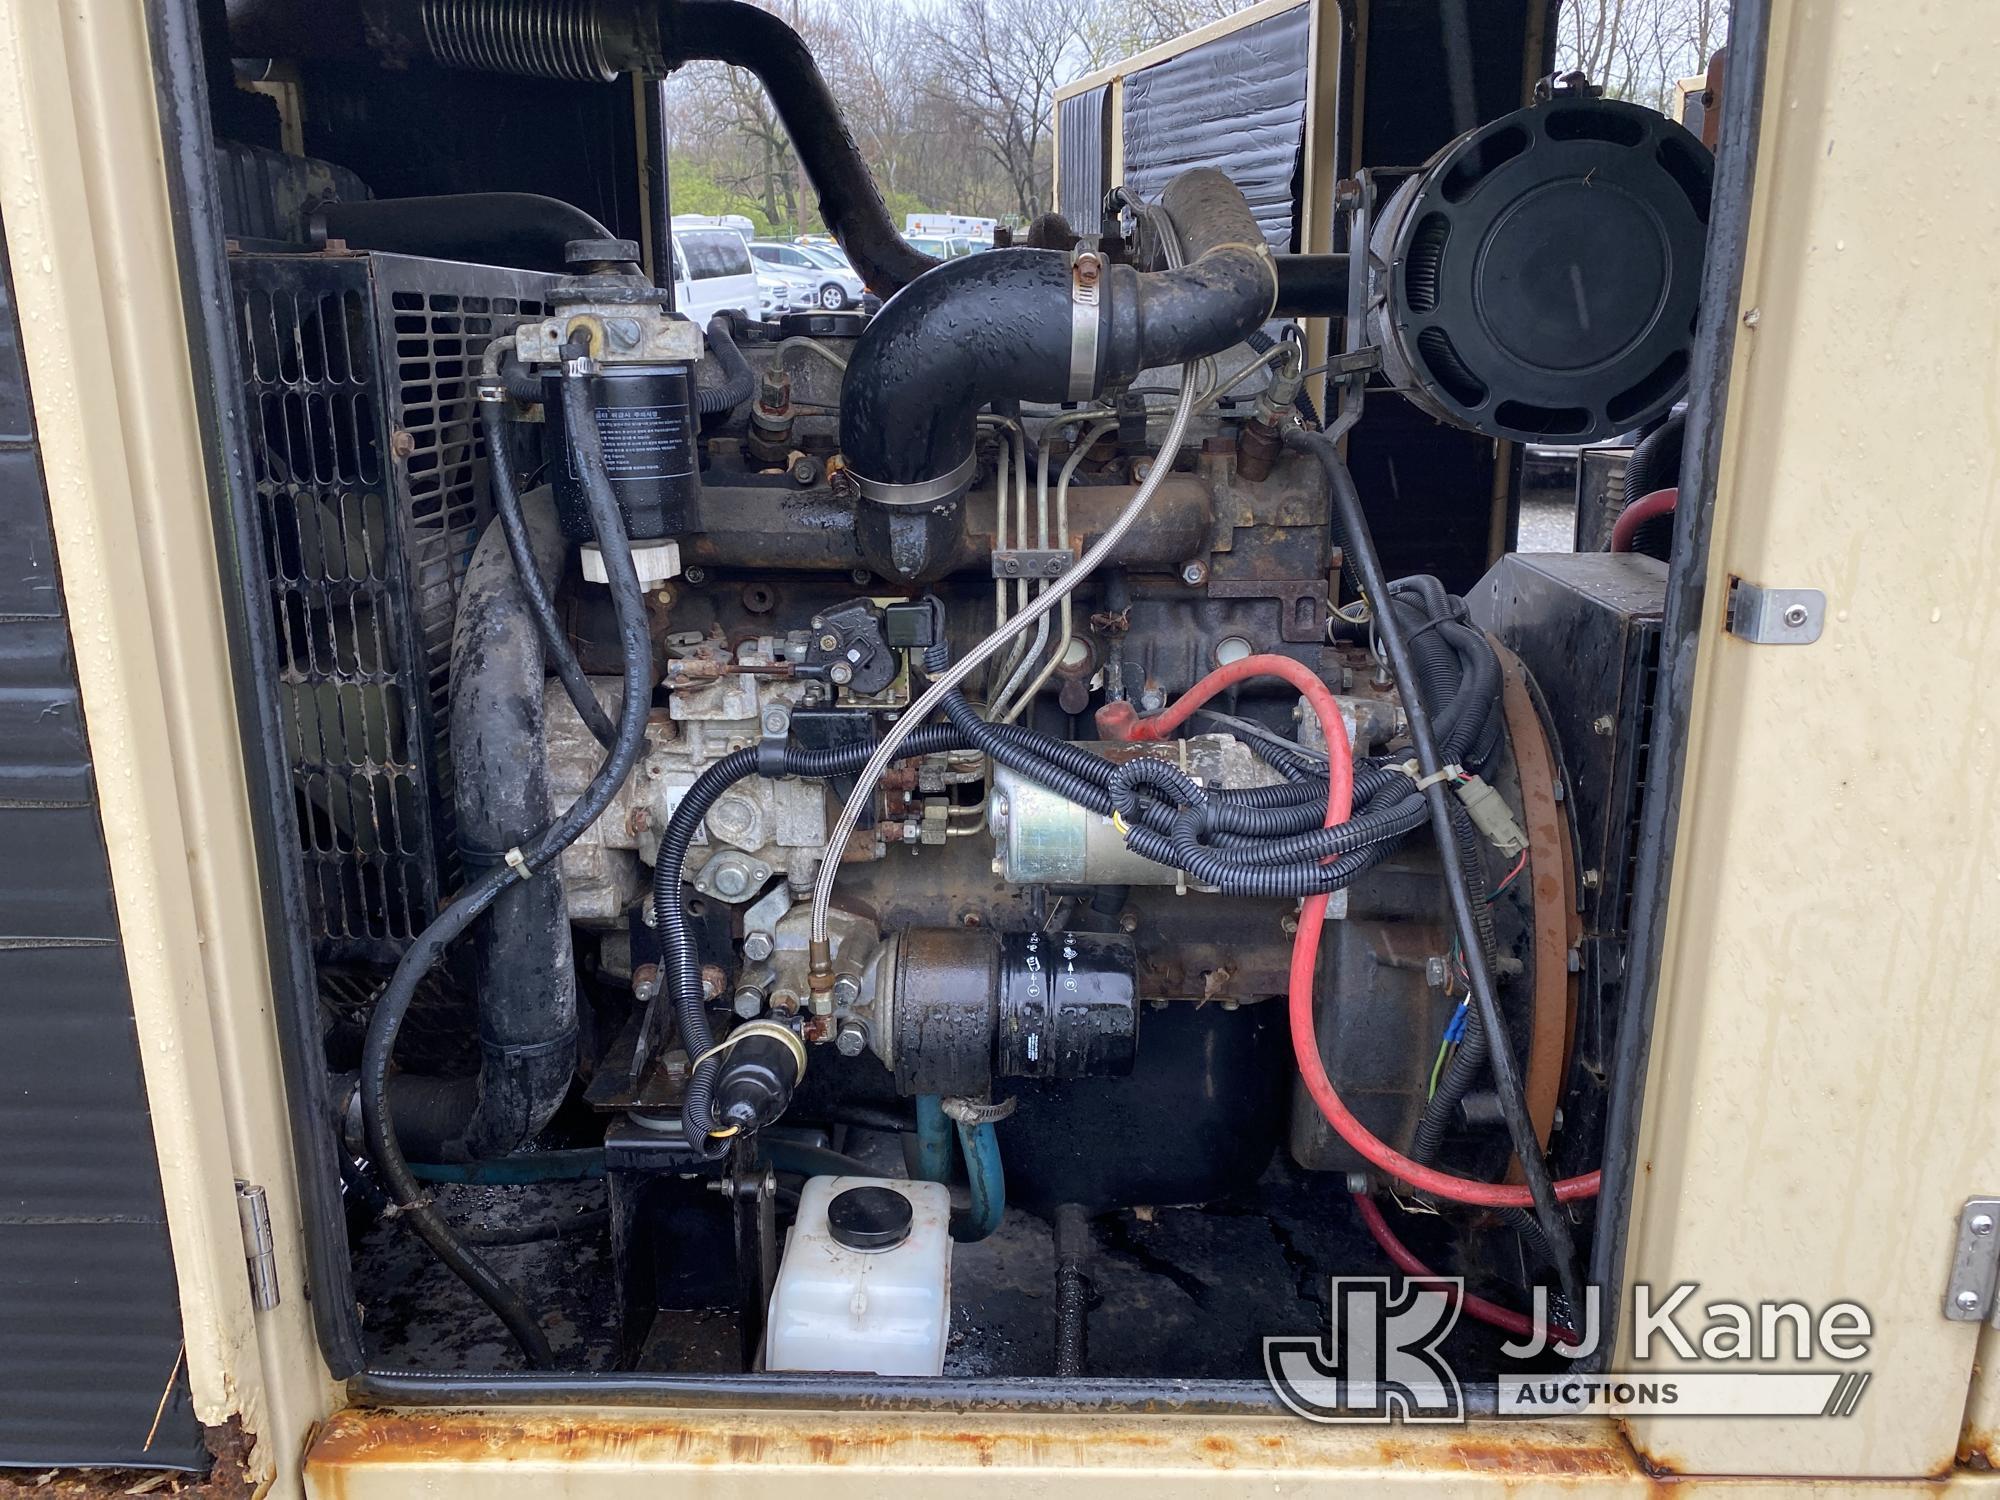 (Plymouth Meeting, PA) Generac 2782910100 Generator, Skid Mtd. Runs, Rust Damage